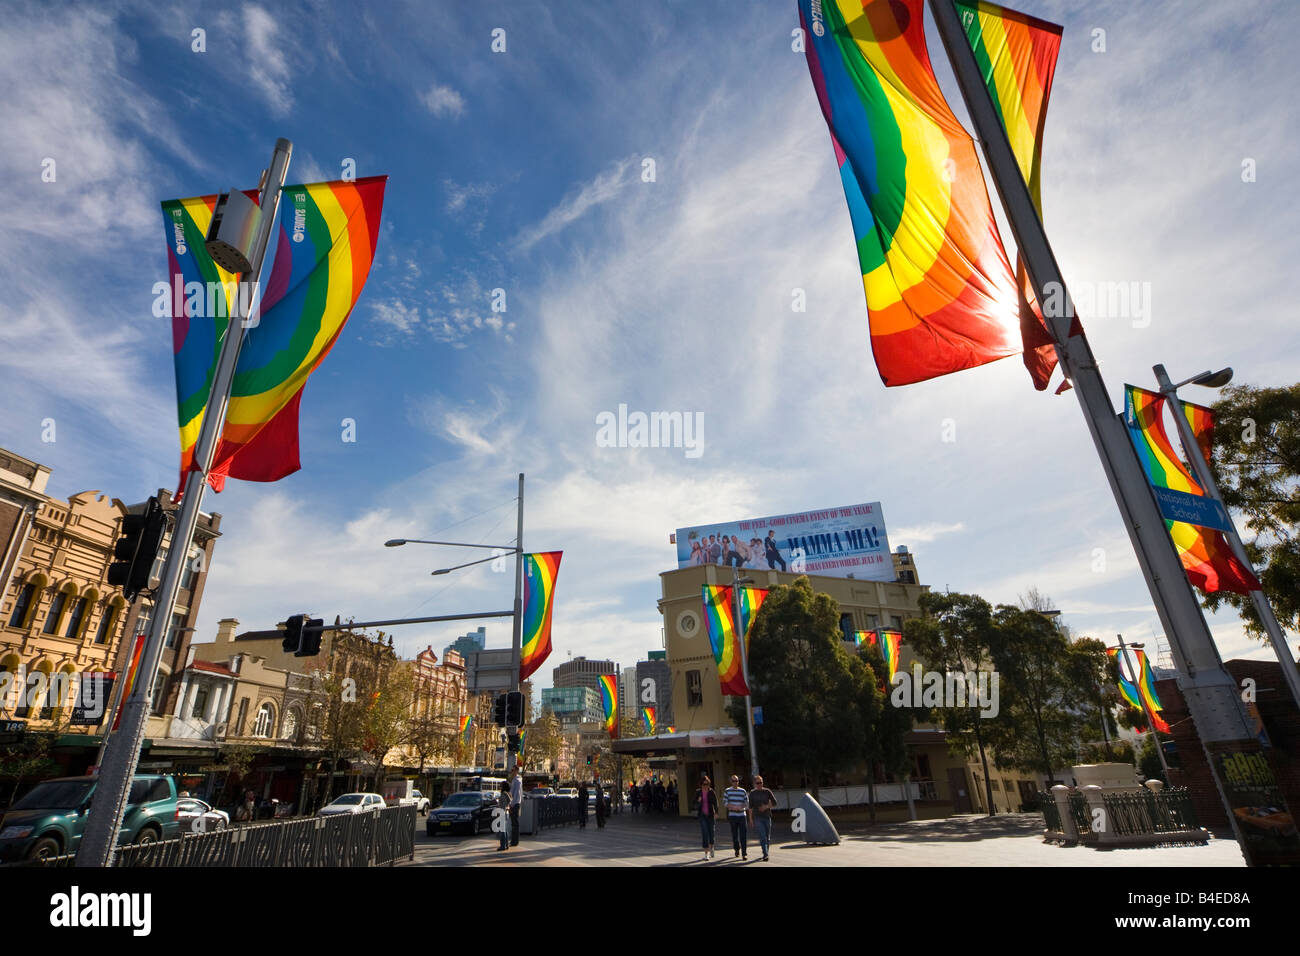 Taylor Square Sydney NSW Australie. Bannières Bannières arc-en-ciel de poteaux dans le cœur de la communauté LGBT, gay Banque D'Images